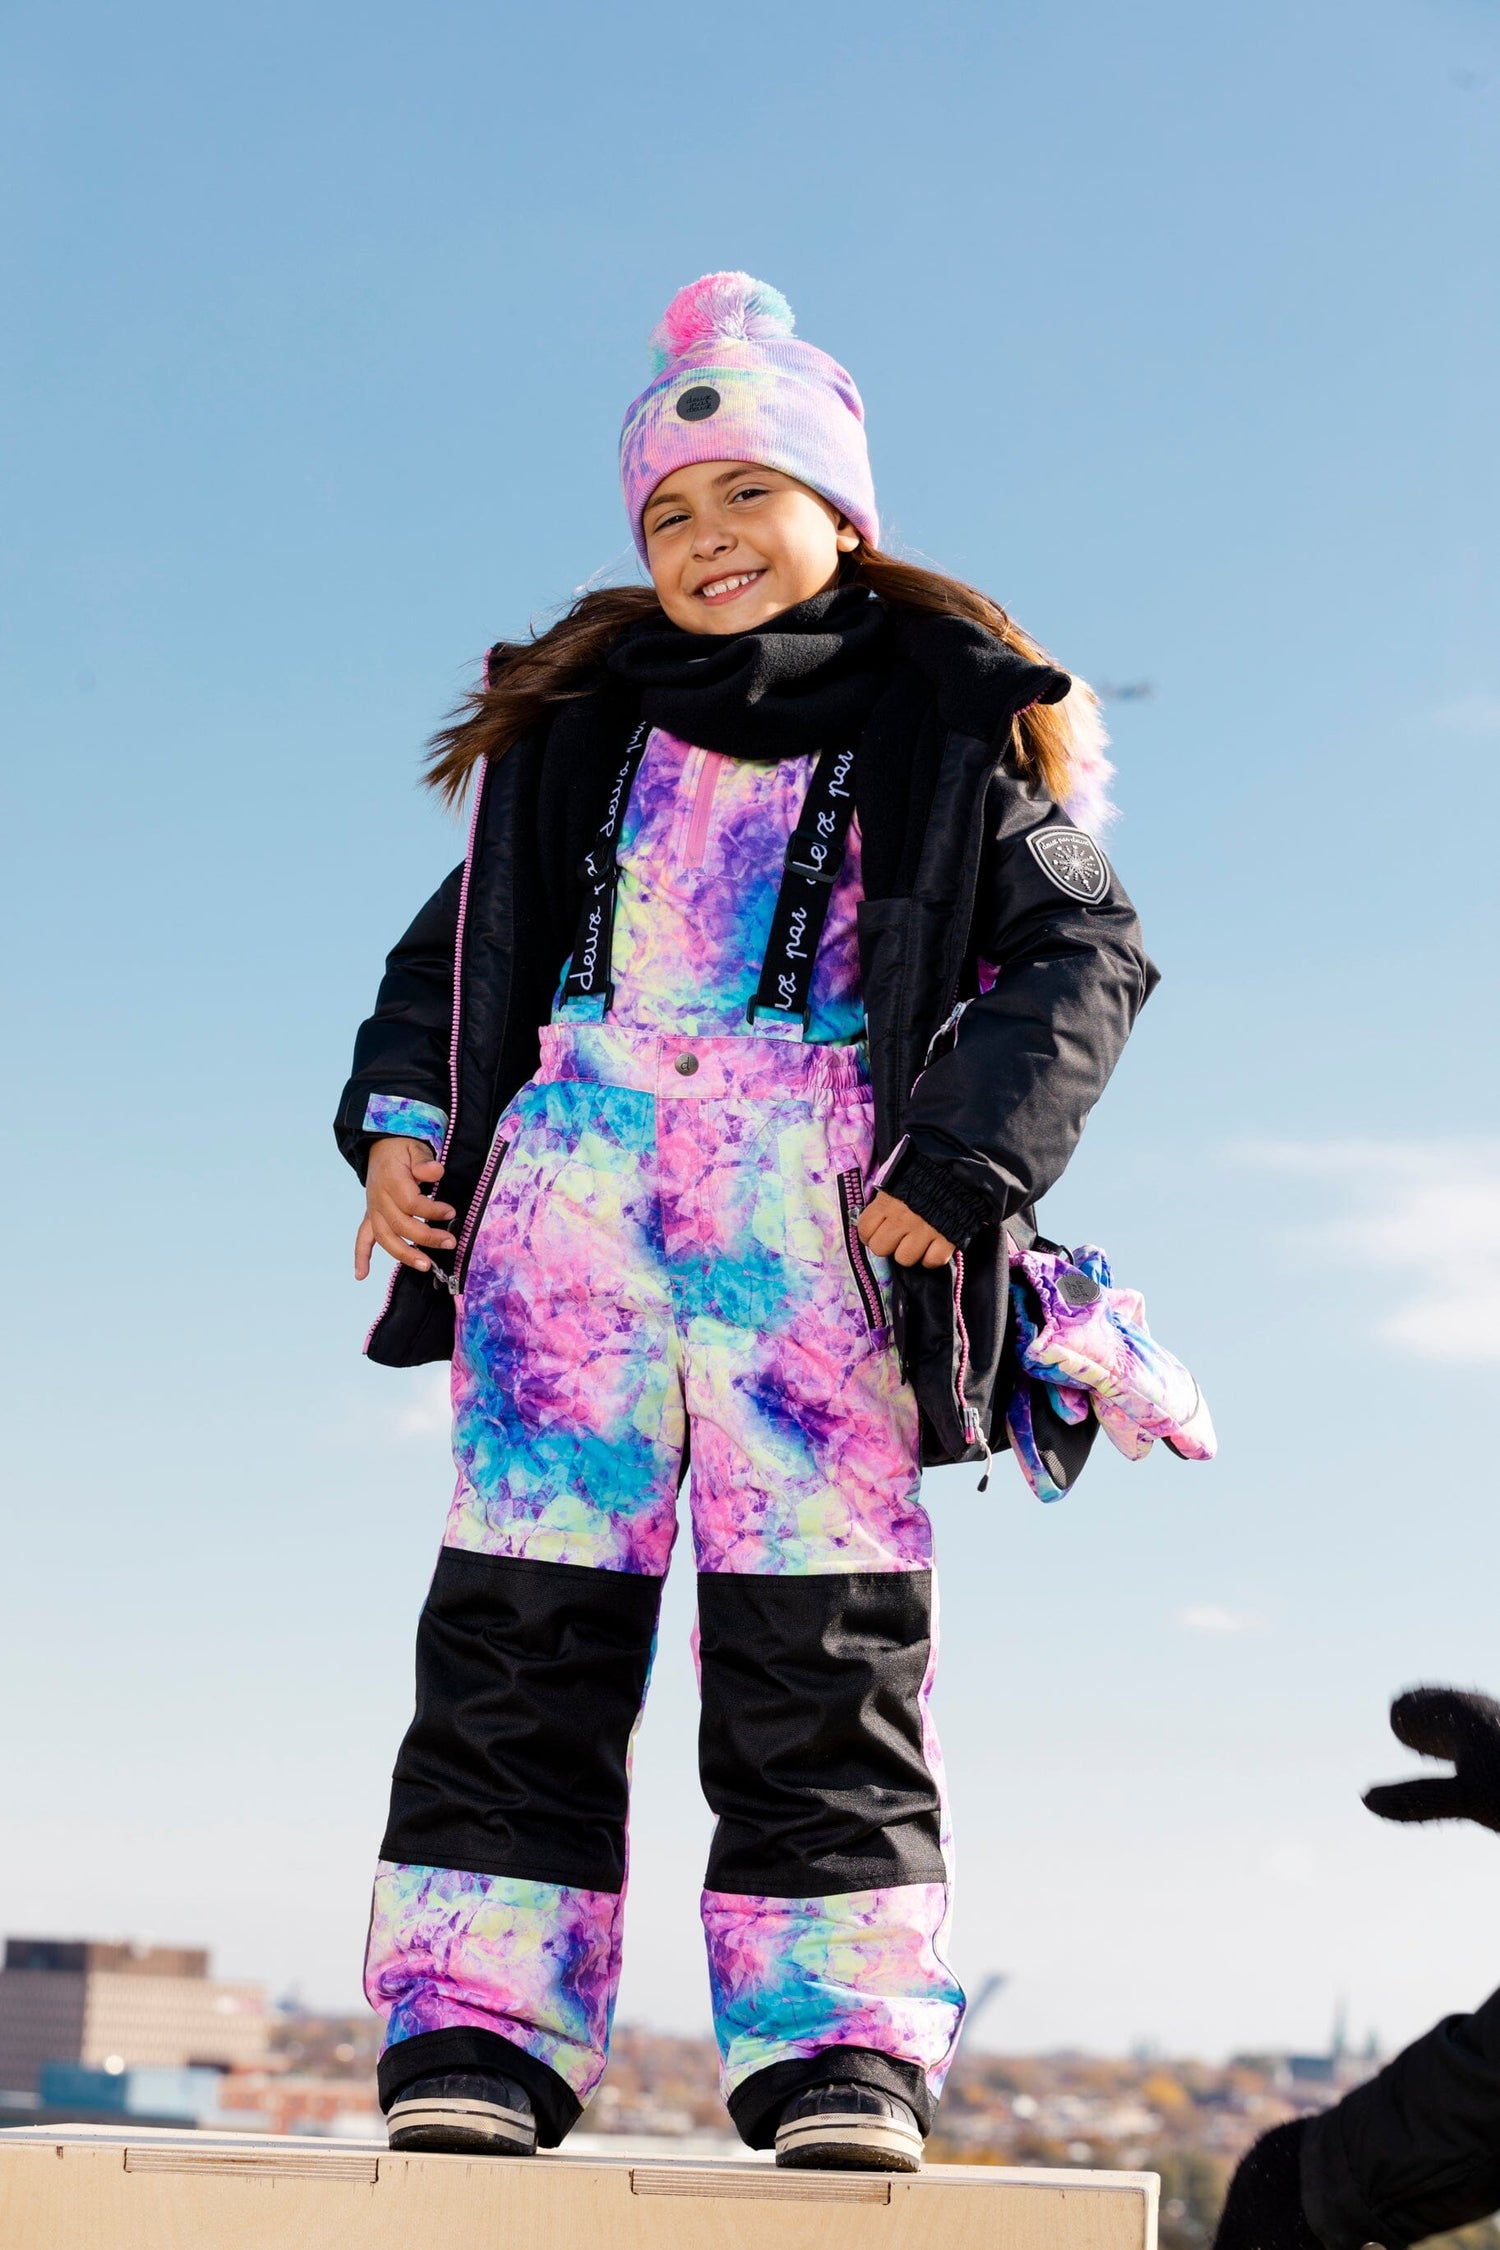 Two Piece Snowsuit Black With Frosted Rainbow Print Snowsuits Deux par Deux 